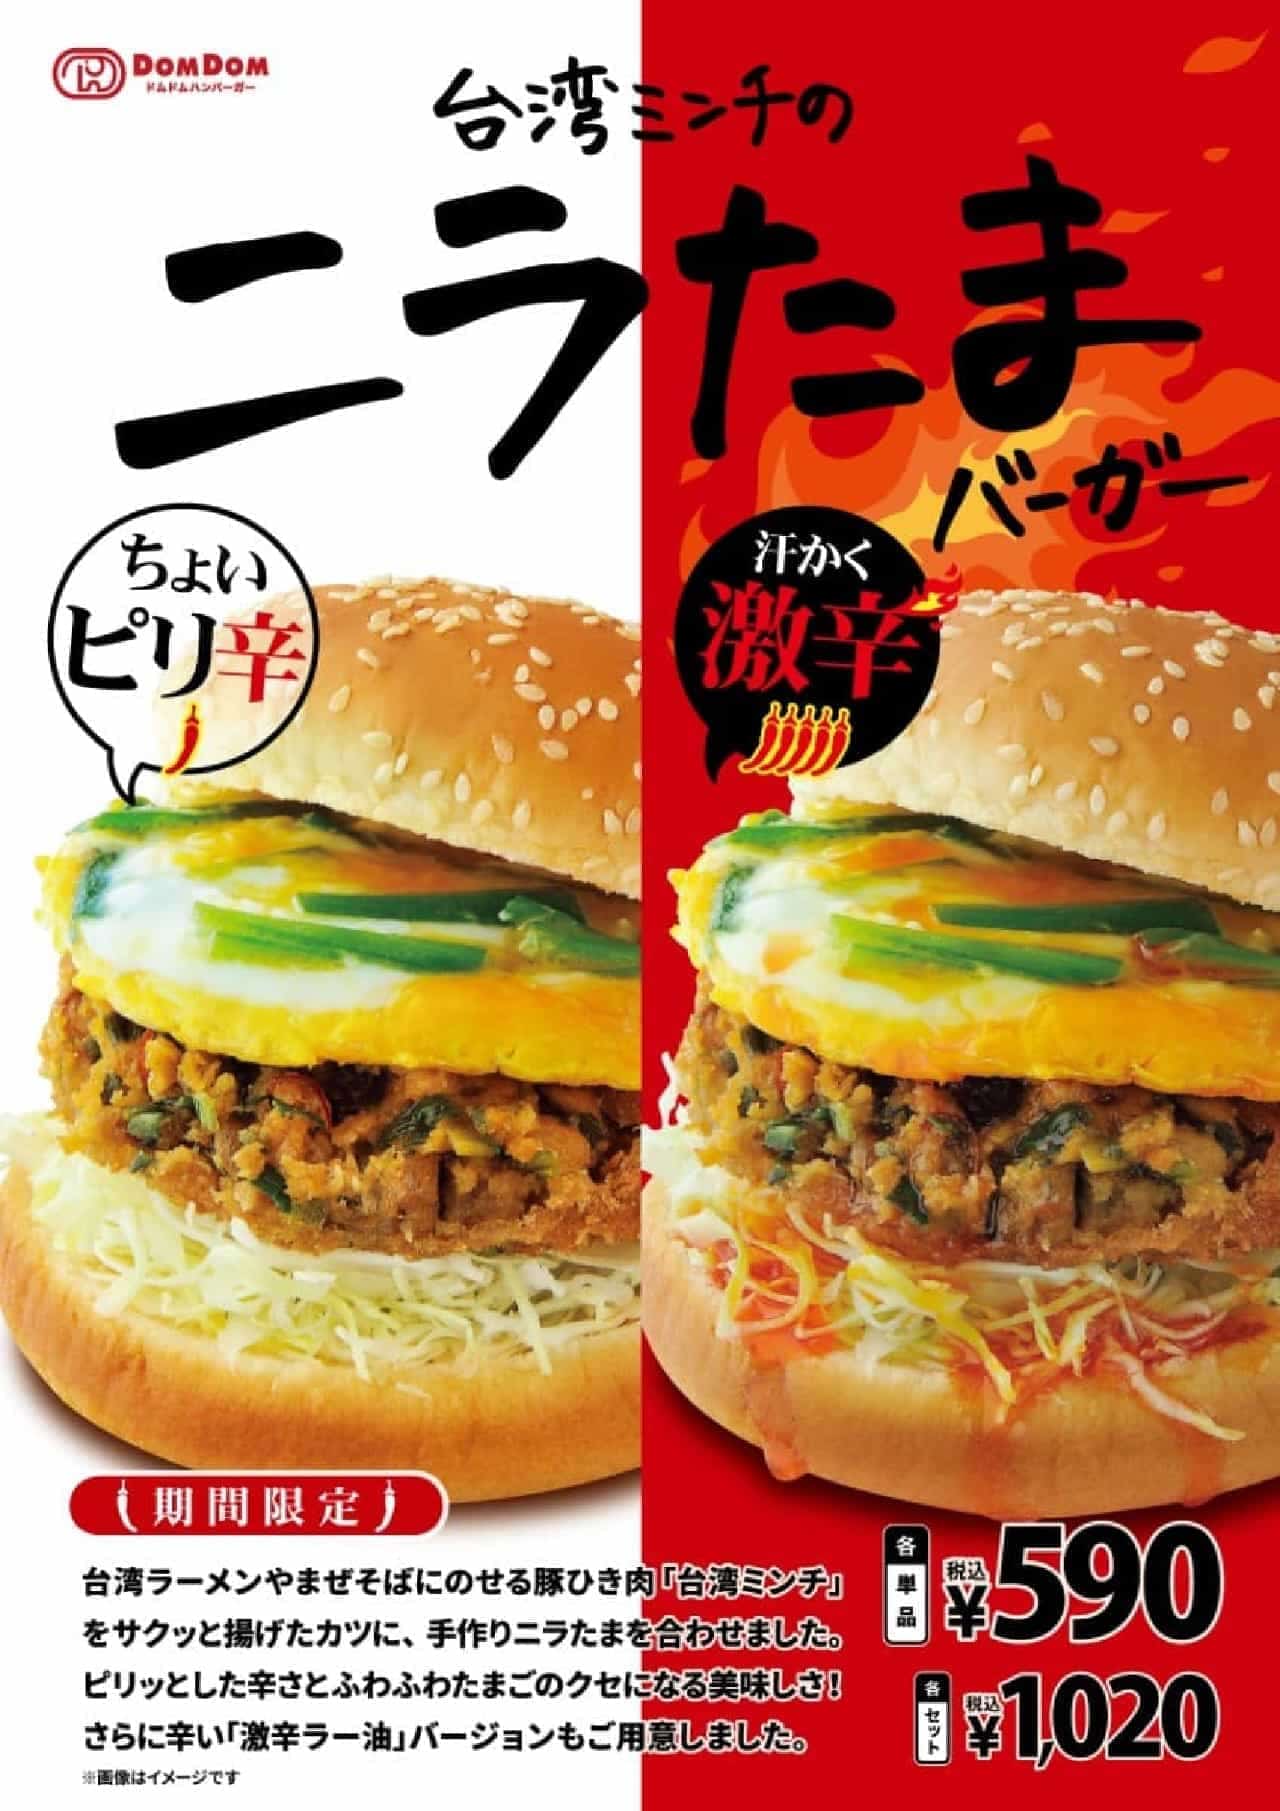 ドムドムハンバーガー「台湾ミンチのニラたまバーガー」